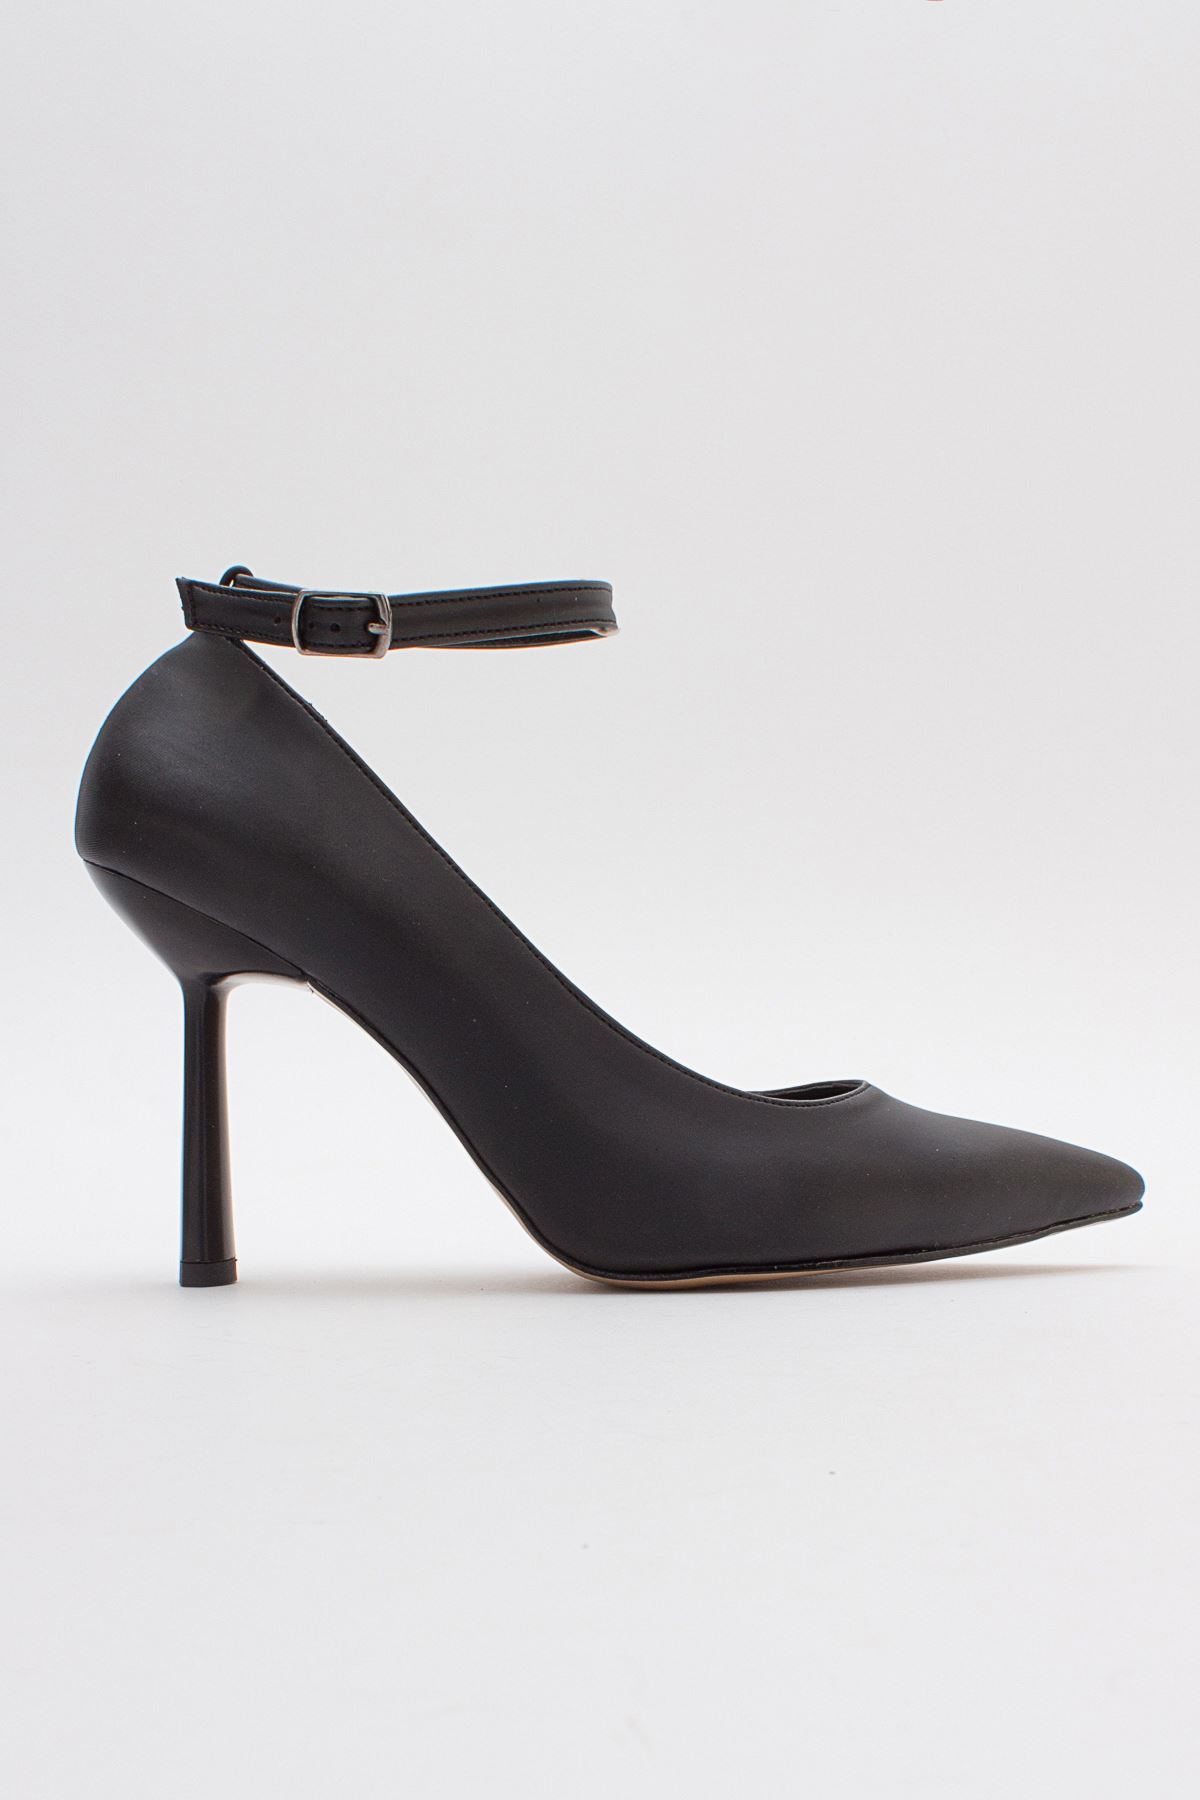 Kadın Bilekten Bağlamalı Topuklu Ayakkabı Ebra Gate29-Siyah